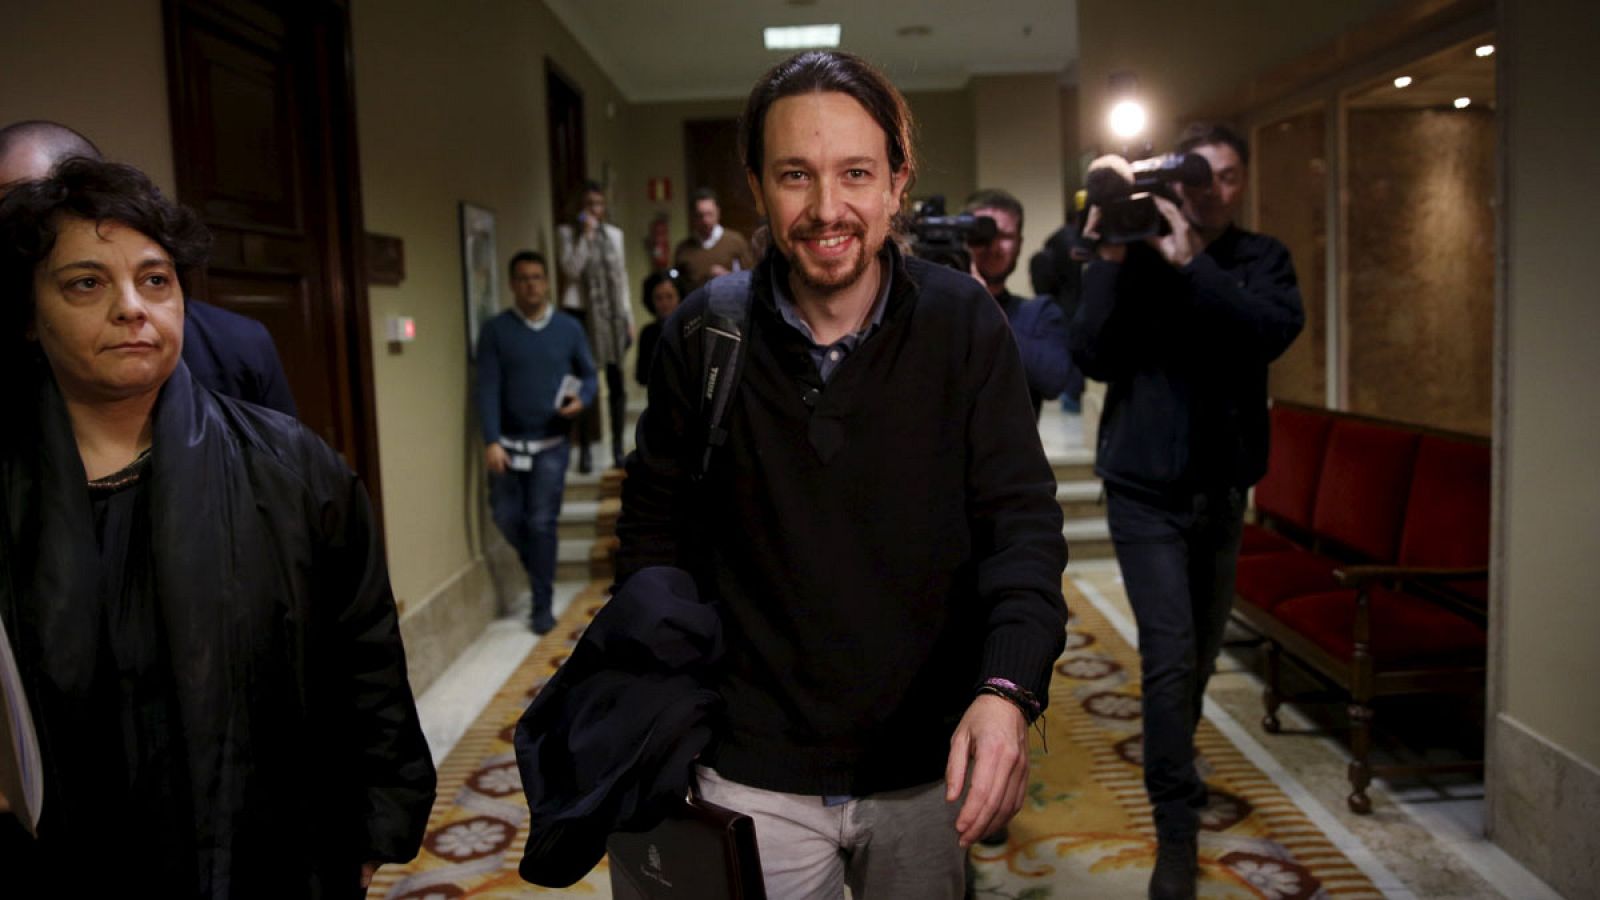 El líder de Podemos, Pablo Iglesias, acude al Congreso de los DIputados a formlizar su acta de diputado